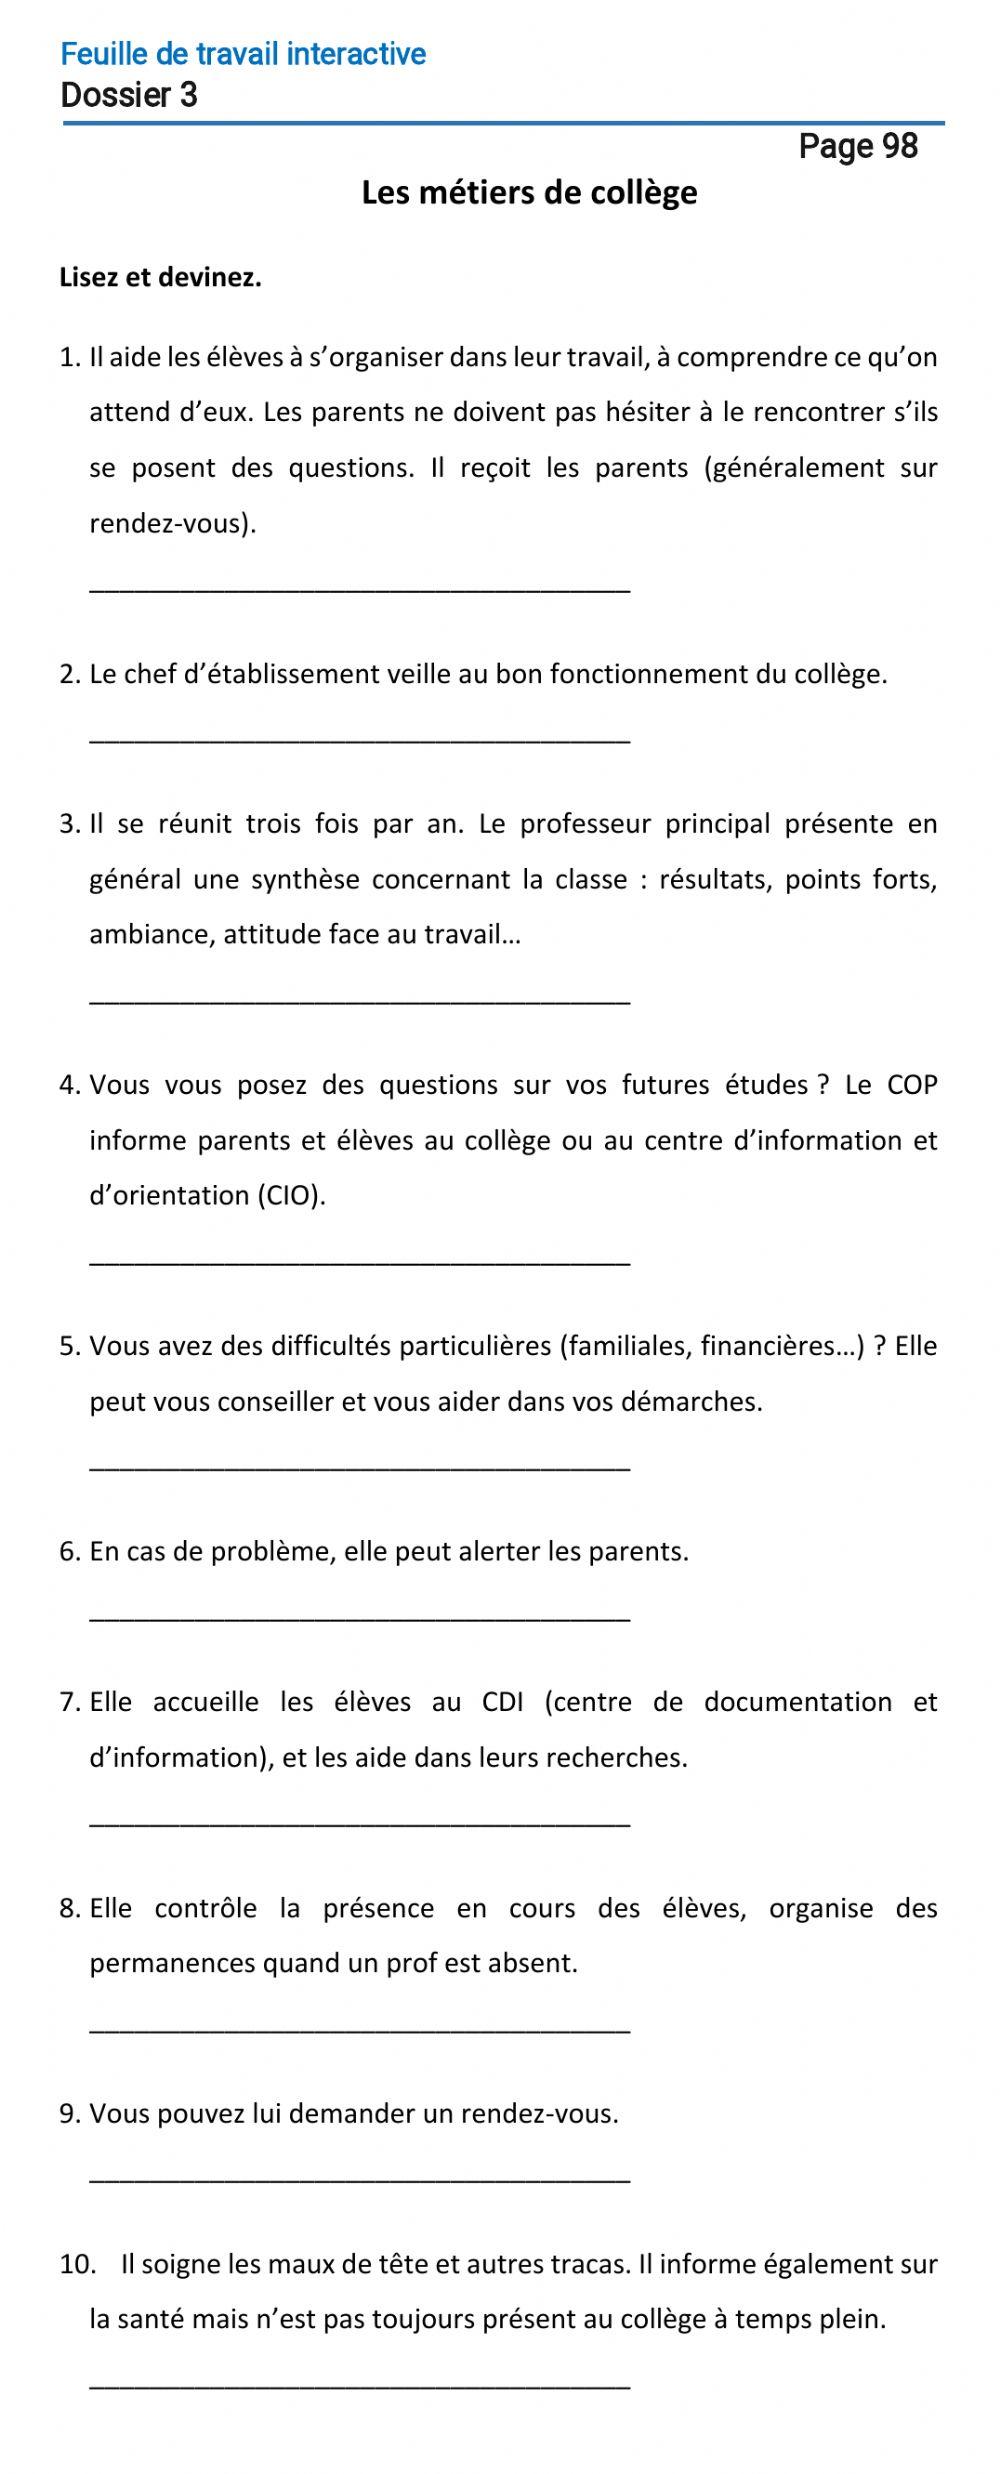 Le français-9 (повыш. ур.)-Dossier 3-Page 98